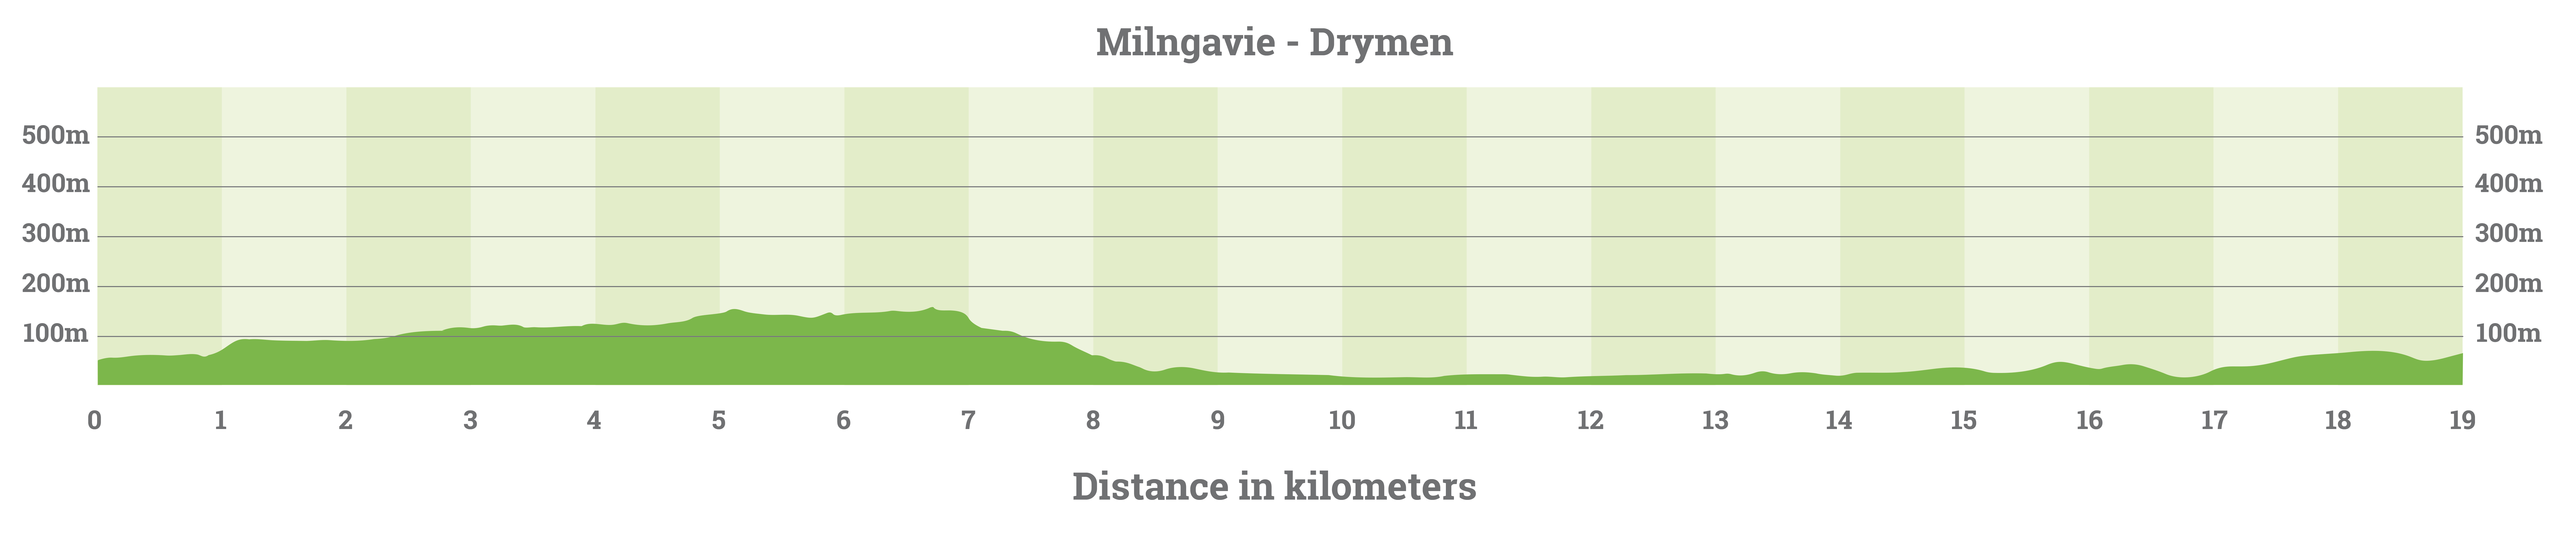 milngavie-to-drymen-elevation